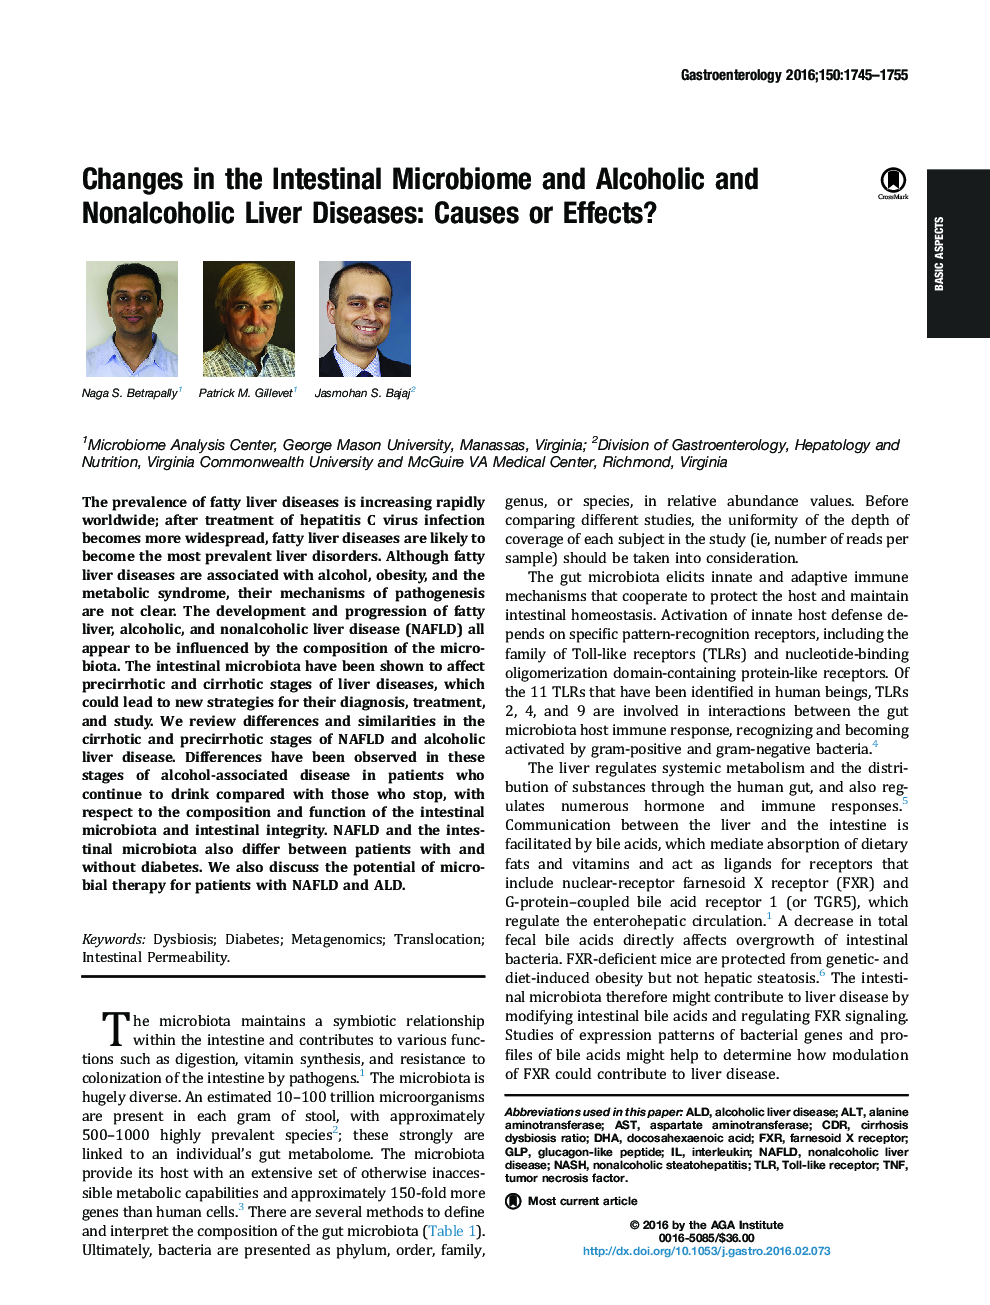 تغییرات در میکروبیوم روده و بیماری های کبدی الکلی و غیر آلرژی: علل یا اثرات 